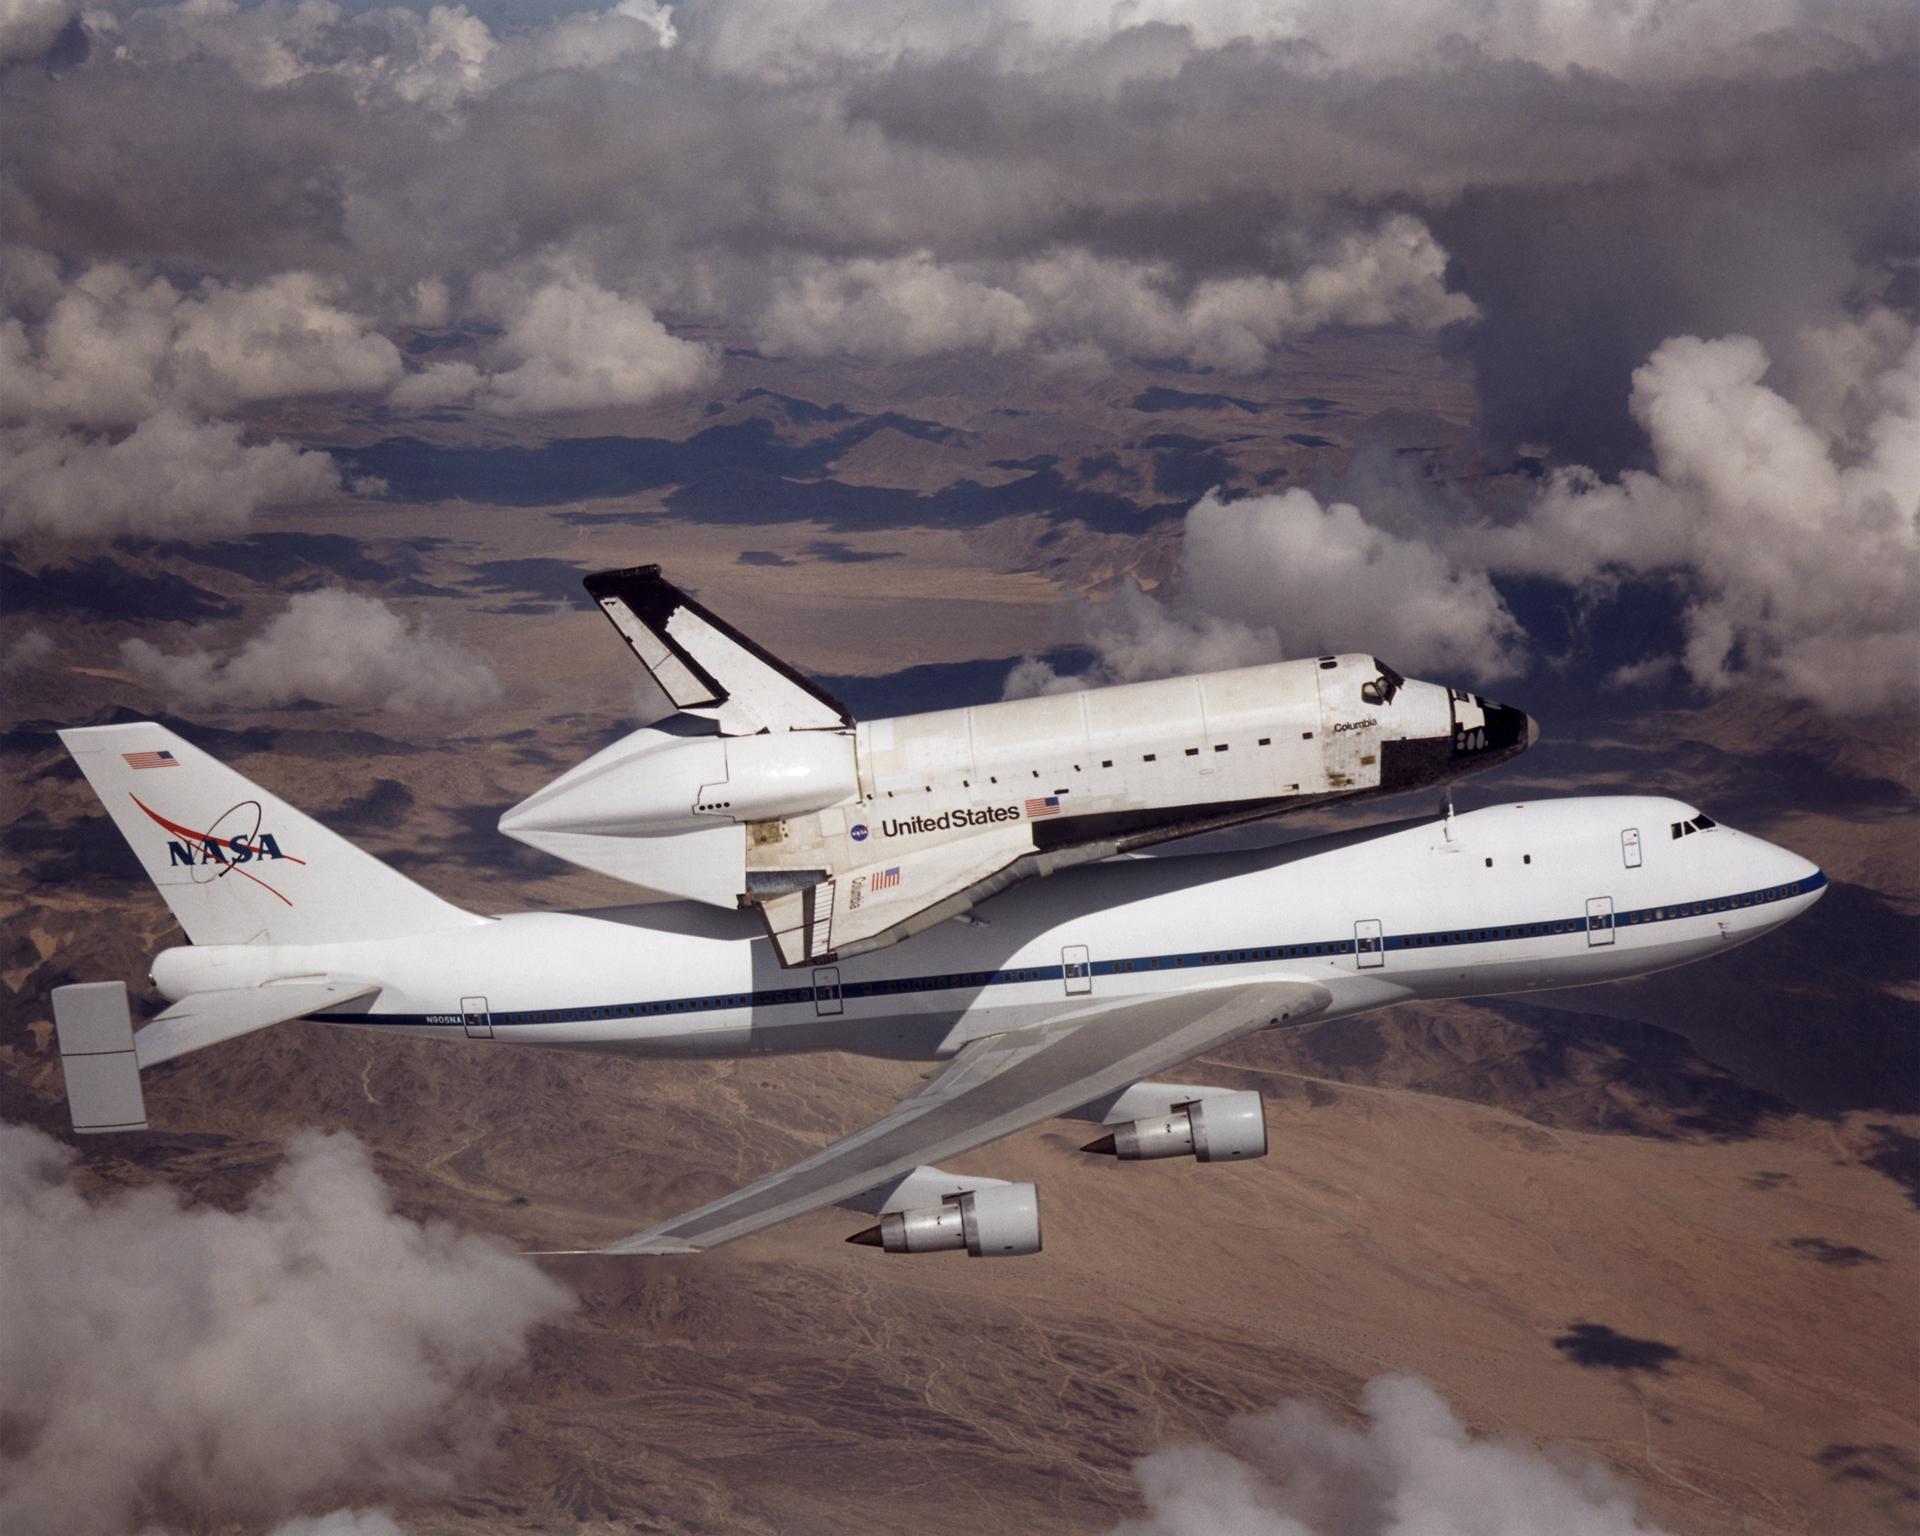 เครื่องบินบรรทุกพิเศษ 747 กำลังบรรทุก กระสวยอวกาศ Columbia จาก Palmdale รัฐแคลิฟอร์เนียไปยัง Kennedy Space Center รัฐฟลอริดา เมื่อวันที่ 1 มีนาคม ค.ศ. 2001